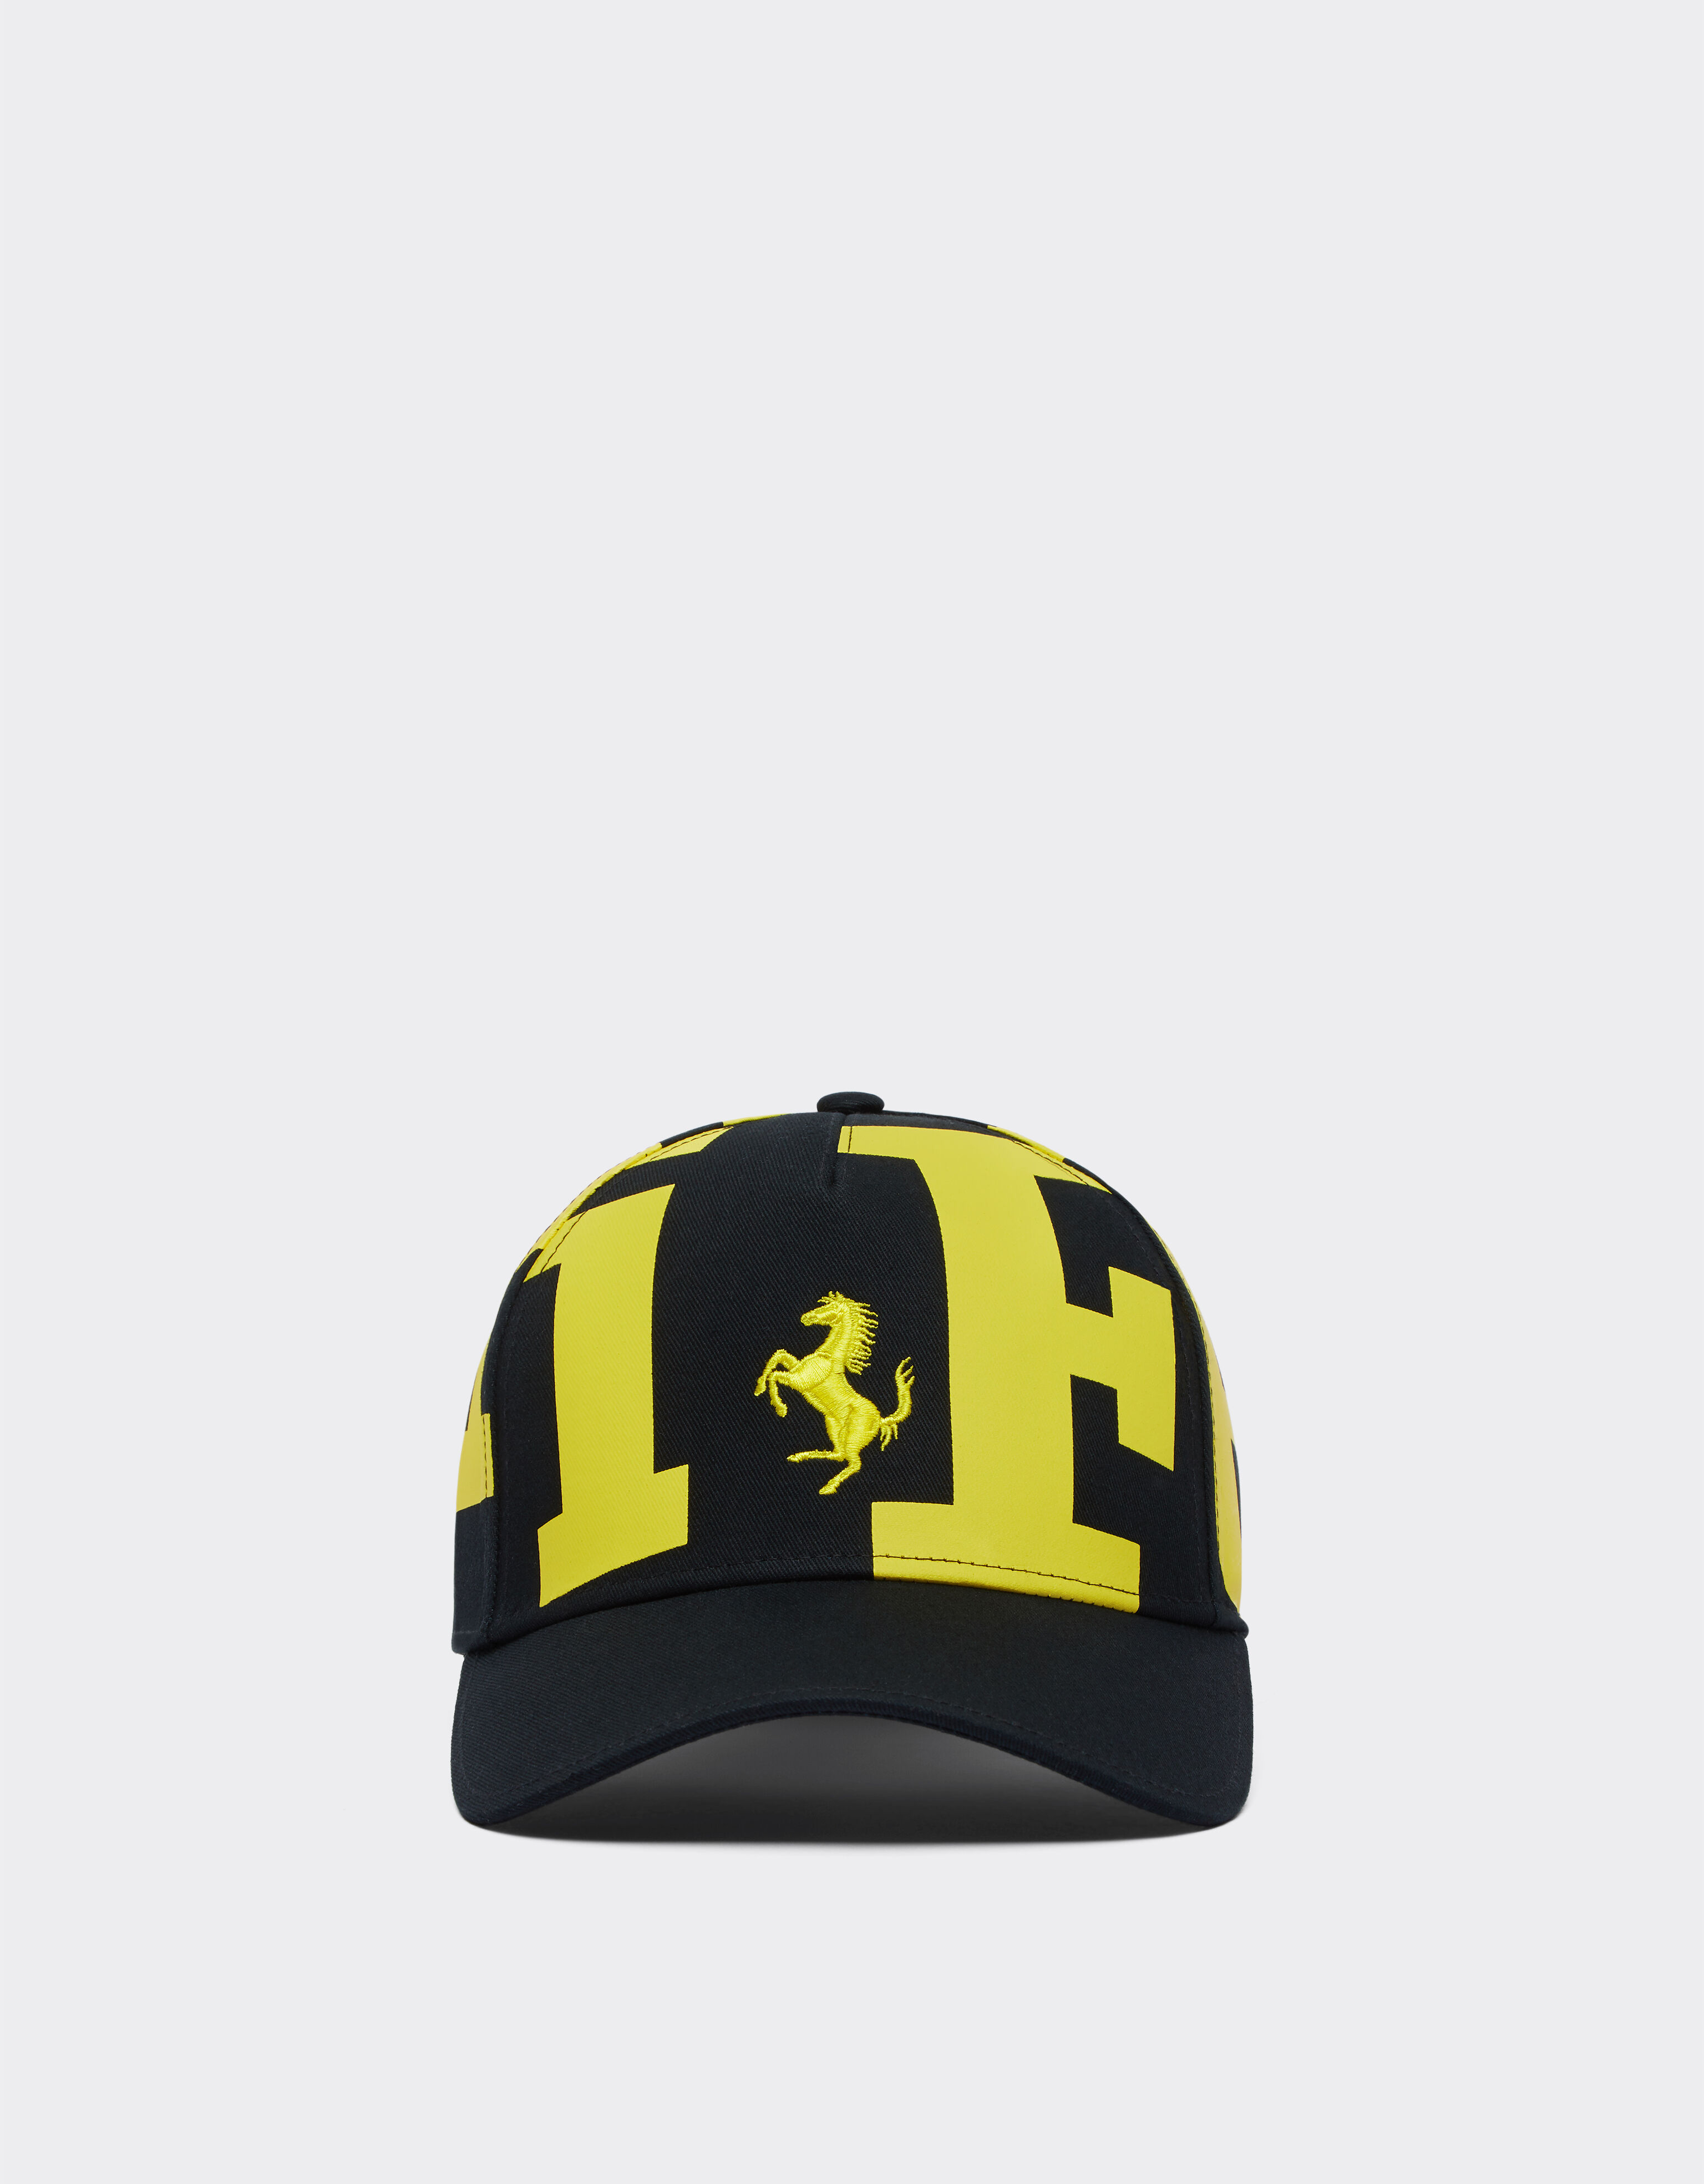 Ferrari Children’s cap with Ferrari logo Black 20274fK